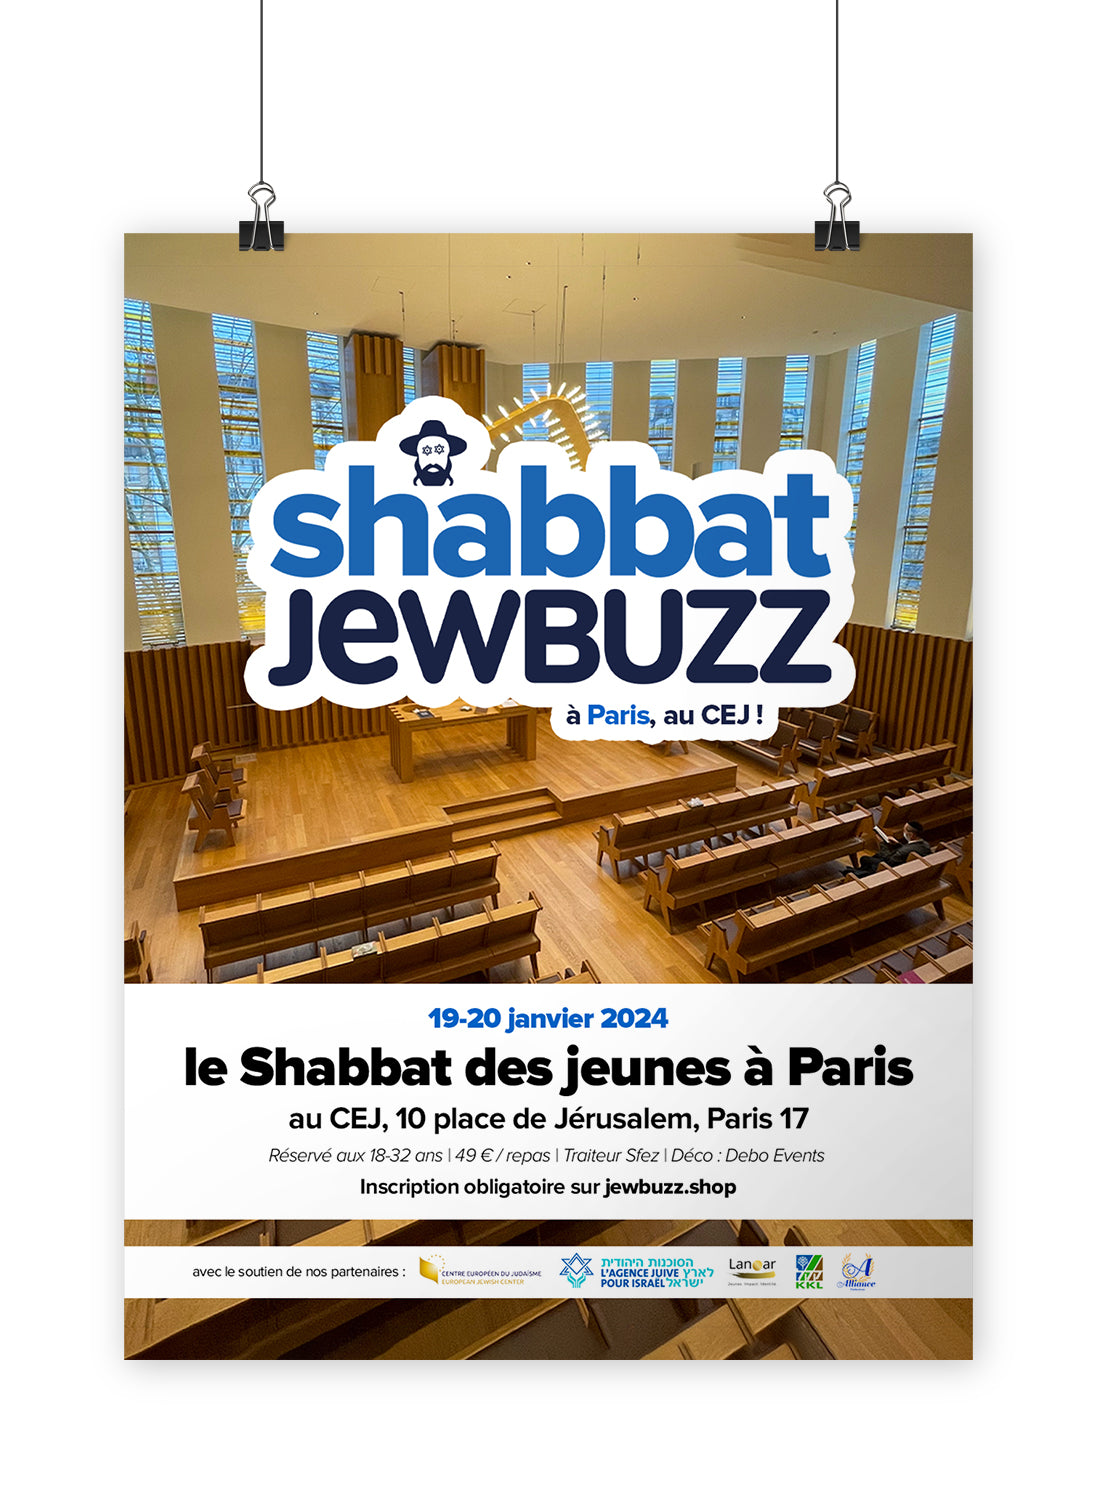 Shabbat jewbuzz - Paris